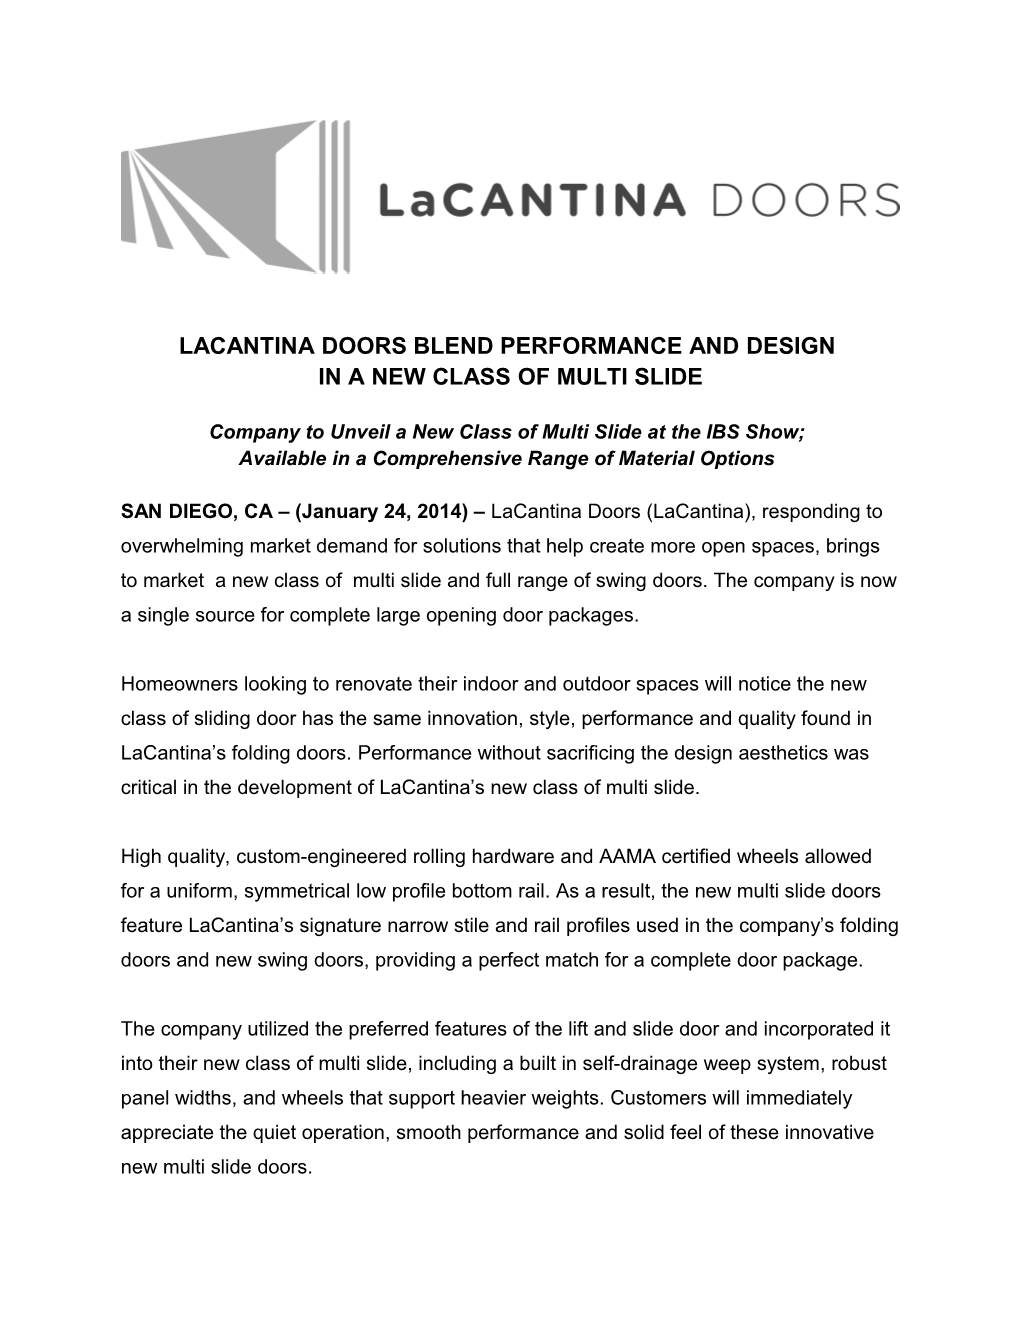 Lacantina Doorsblend Performance and Design